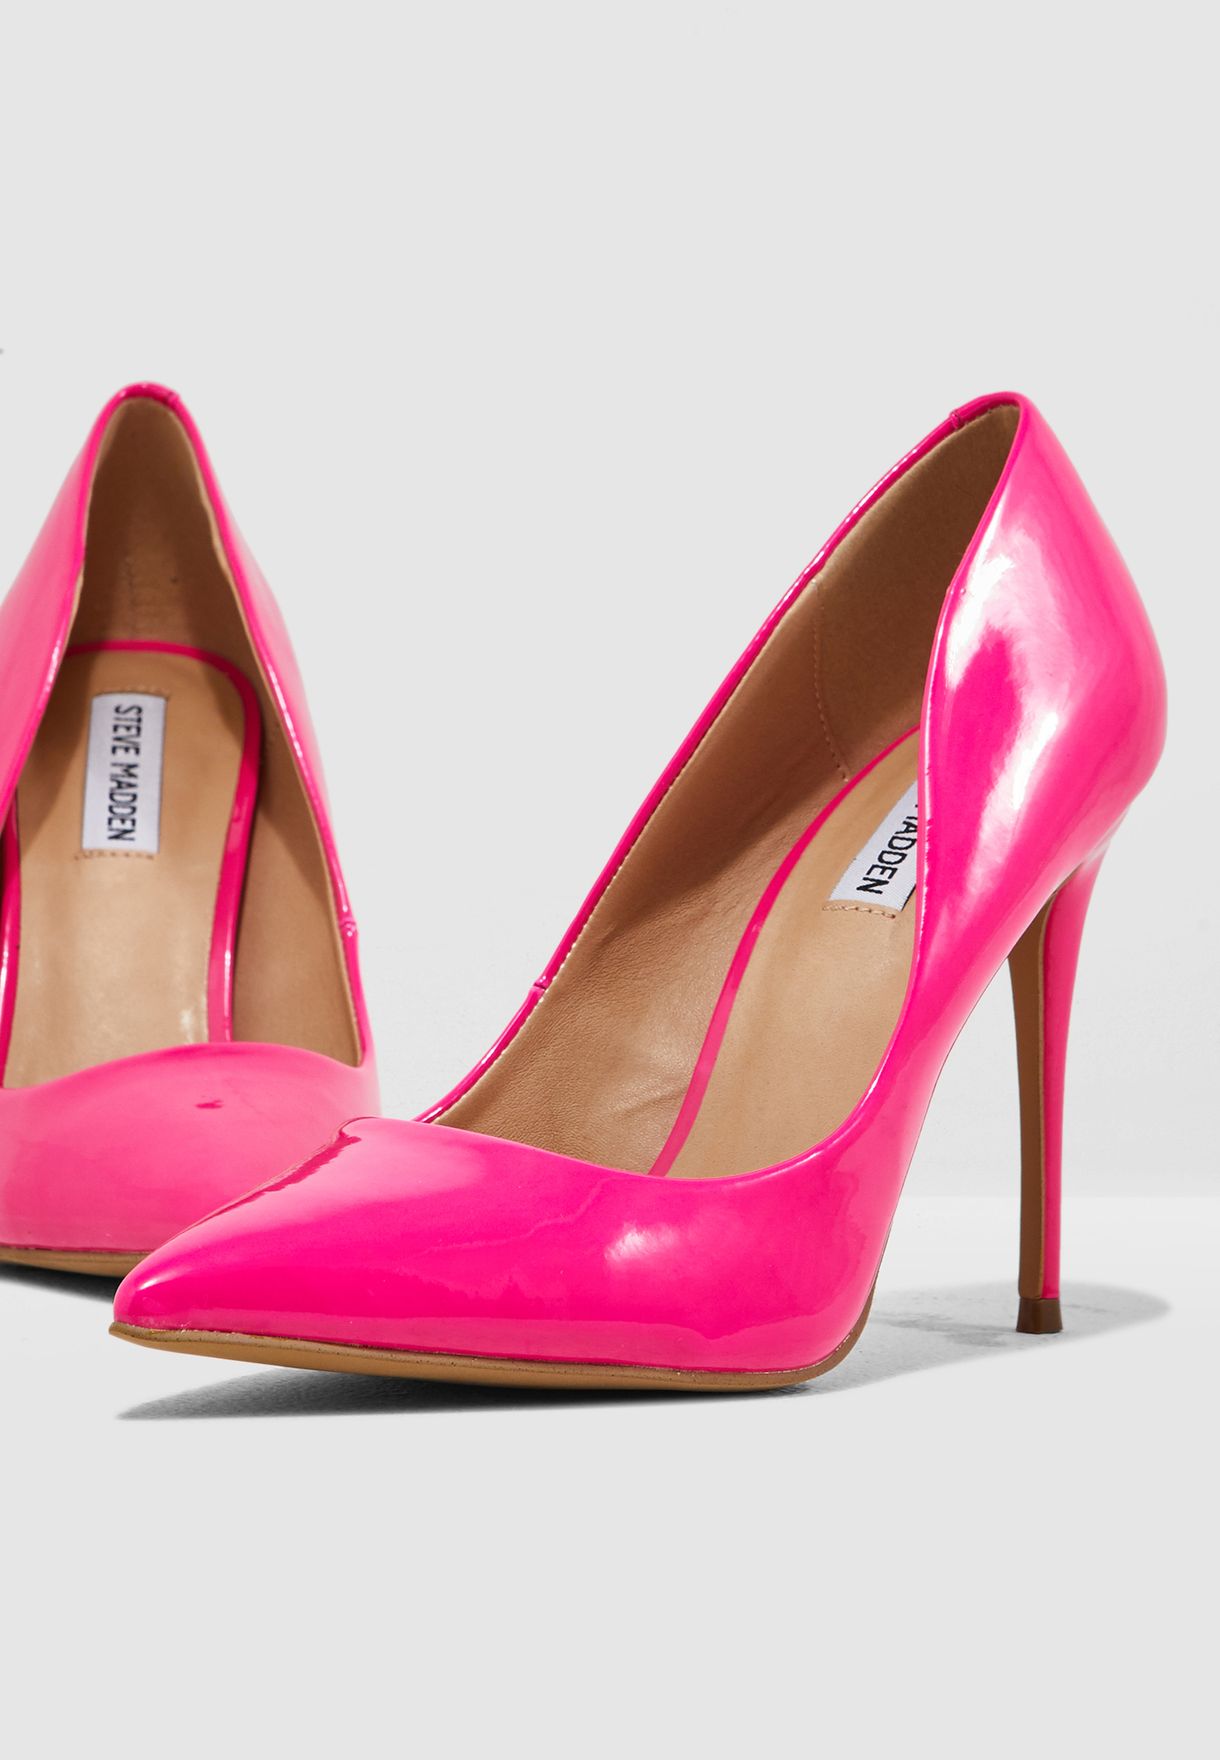 steve madden pink high heels